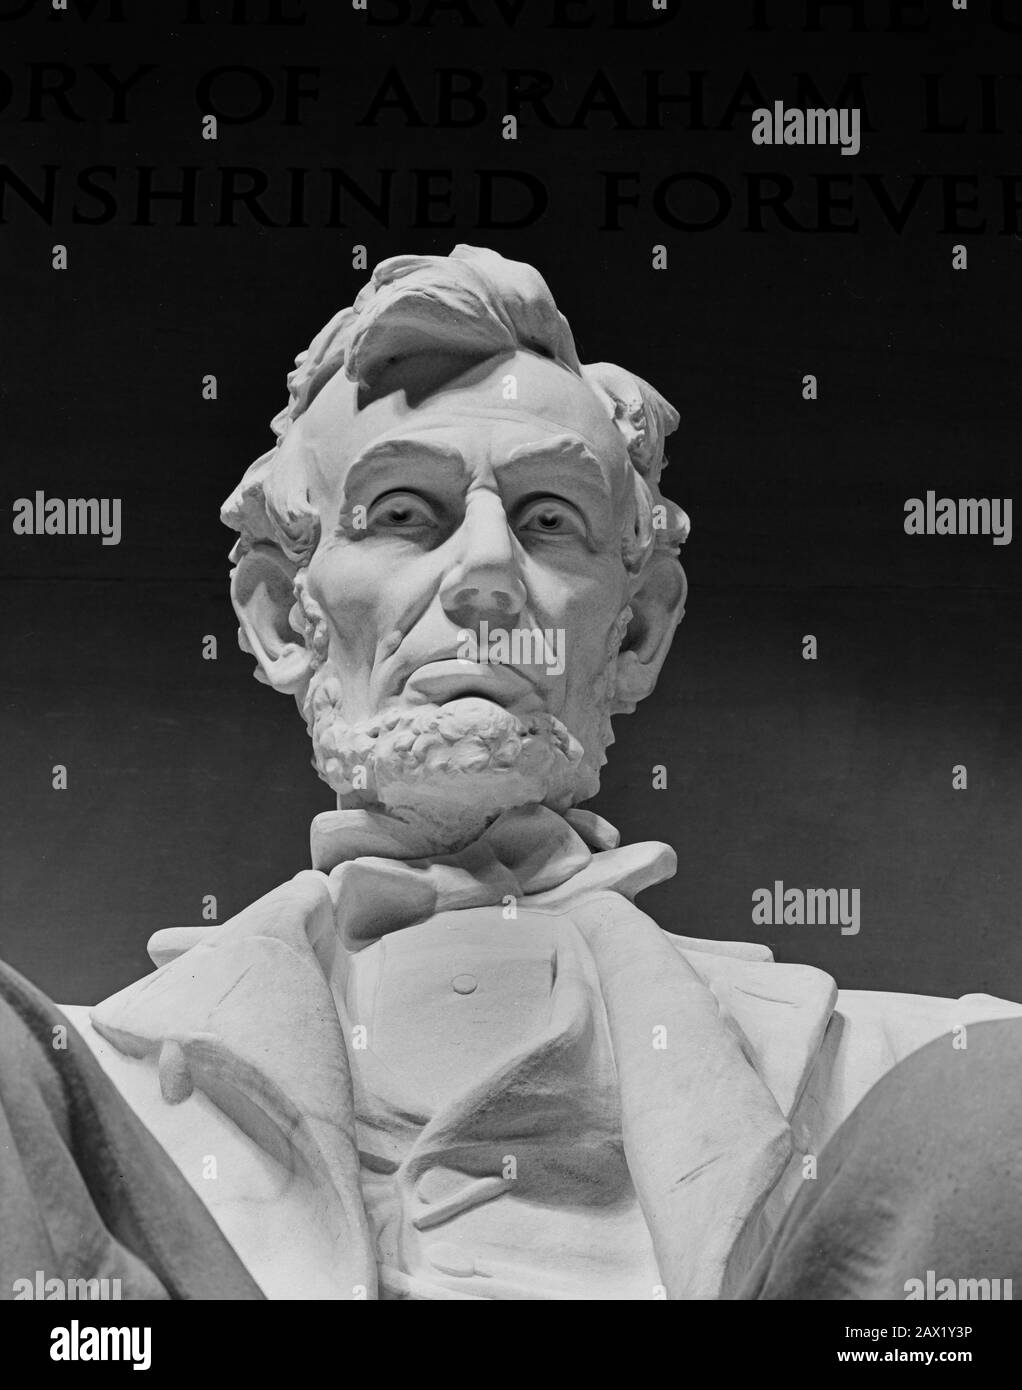 2000 Ca, WASHINGTON, DC, USA: Daniel Chester French's Statue von Abraham Lincoln im Lincoln Memorial, Washington, D.C. Der Präsident der USA, ABRAHAM LINCOLN (* 1809; † 1865). Foto von Carol M. Highsmith Lincoln Memorial, Washington D.C., Das Lincoln Memorial ist eine amerikanische Gedenkstätte, die zum Gedenken an den 16. Präsidenten der Vereinigten Staaten, Abraham Lincoln, errichtet wurde. Es befindet sich in der National Mall in Washington, D.C. und wurde am 30. Mai 1922 eingeweiht. Der Architekt war Henry Bacon, der Bildhauer der Hauptstatue (Abraham Lincoln, 1920) war Daniel Chester French und der Maler des Stockfoto